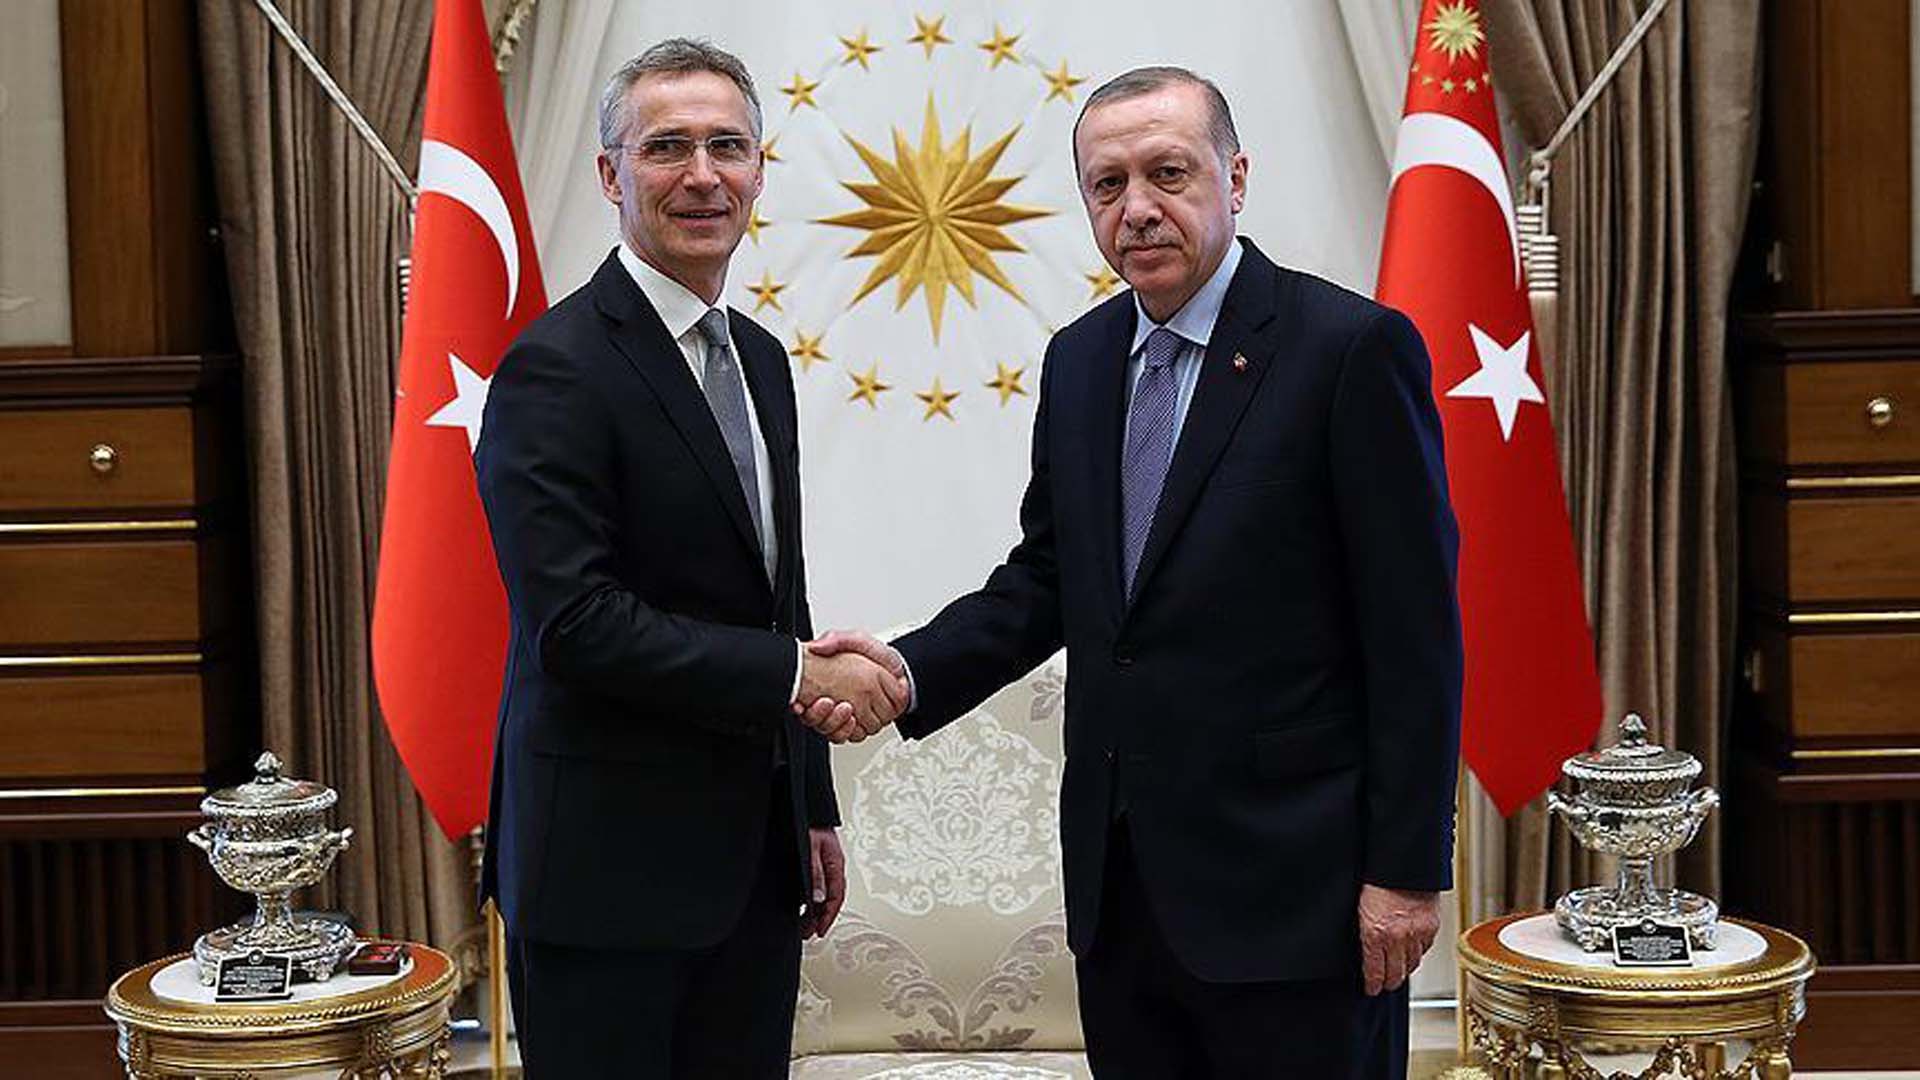 Sosyal medya hesabından duyurdu! NATO Sekreteri Jens Stoltenberg, Cumhurbaşkanı Erdoğan'a teşekkür etti! 